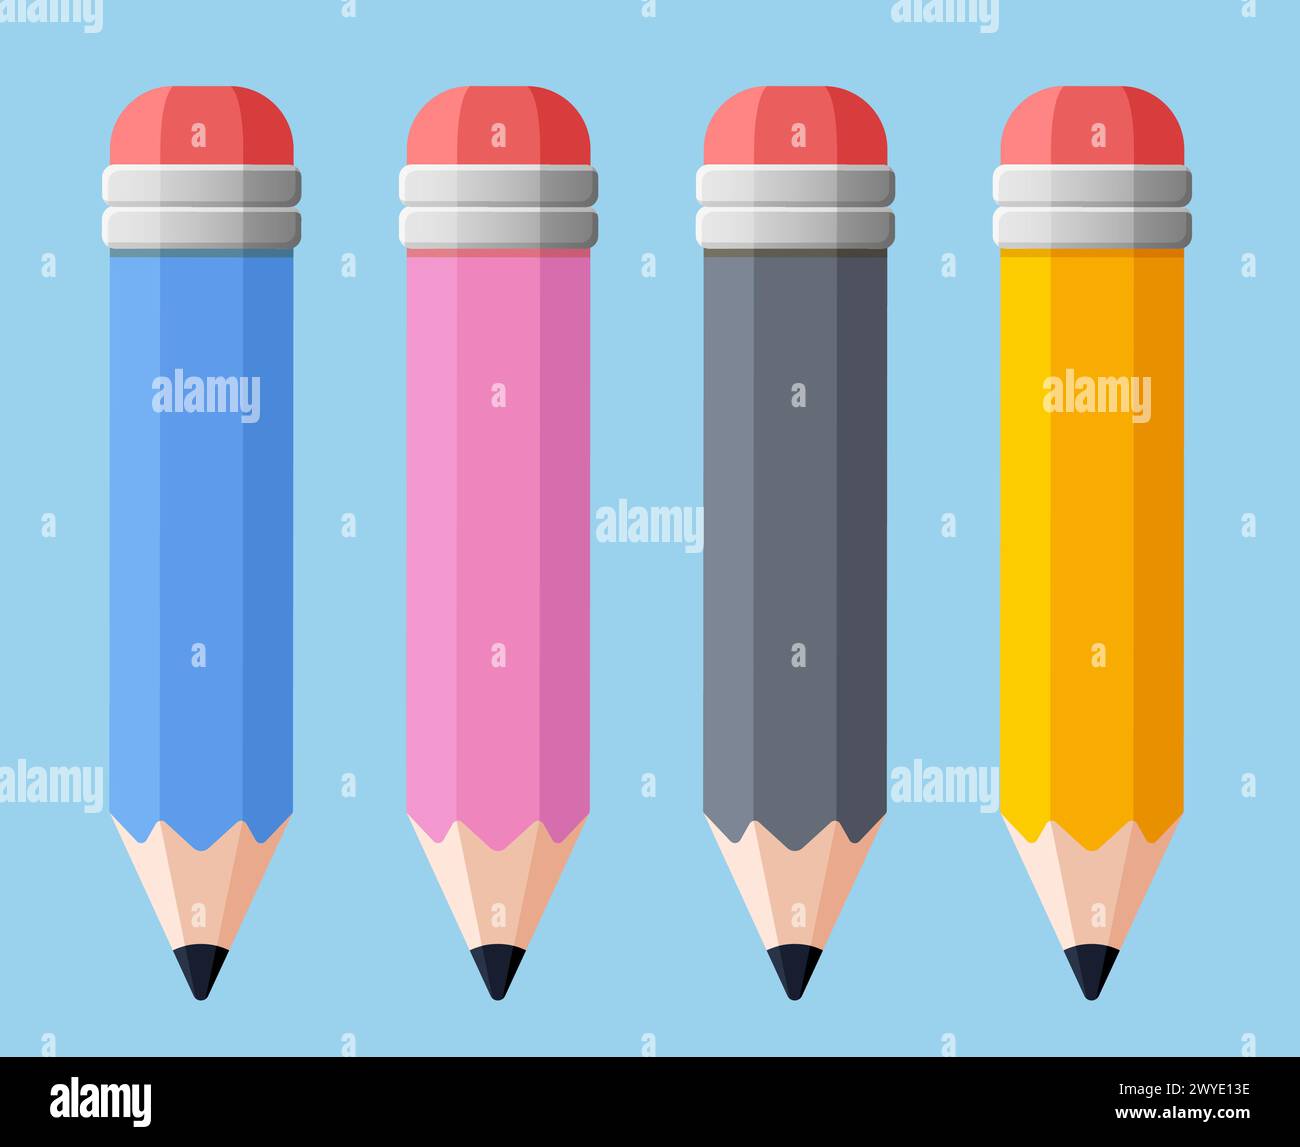 Illustration de crayons set plat design isolé Illustration de Vecteur